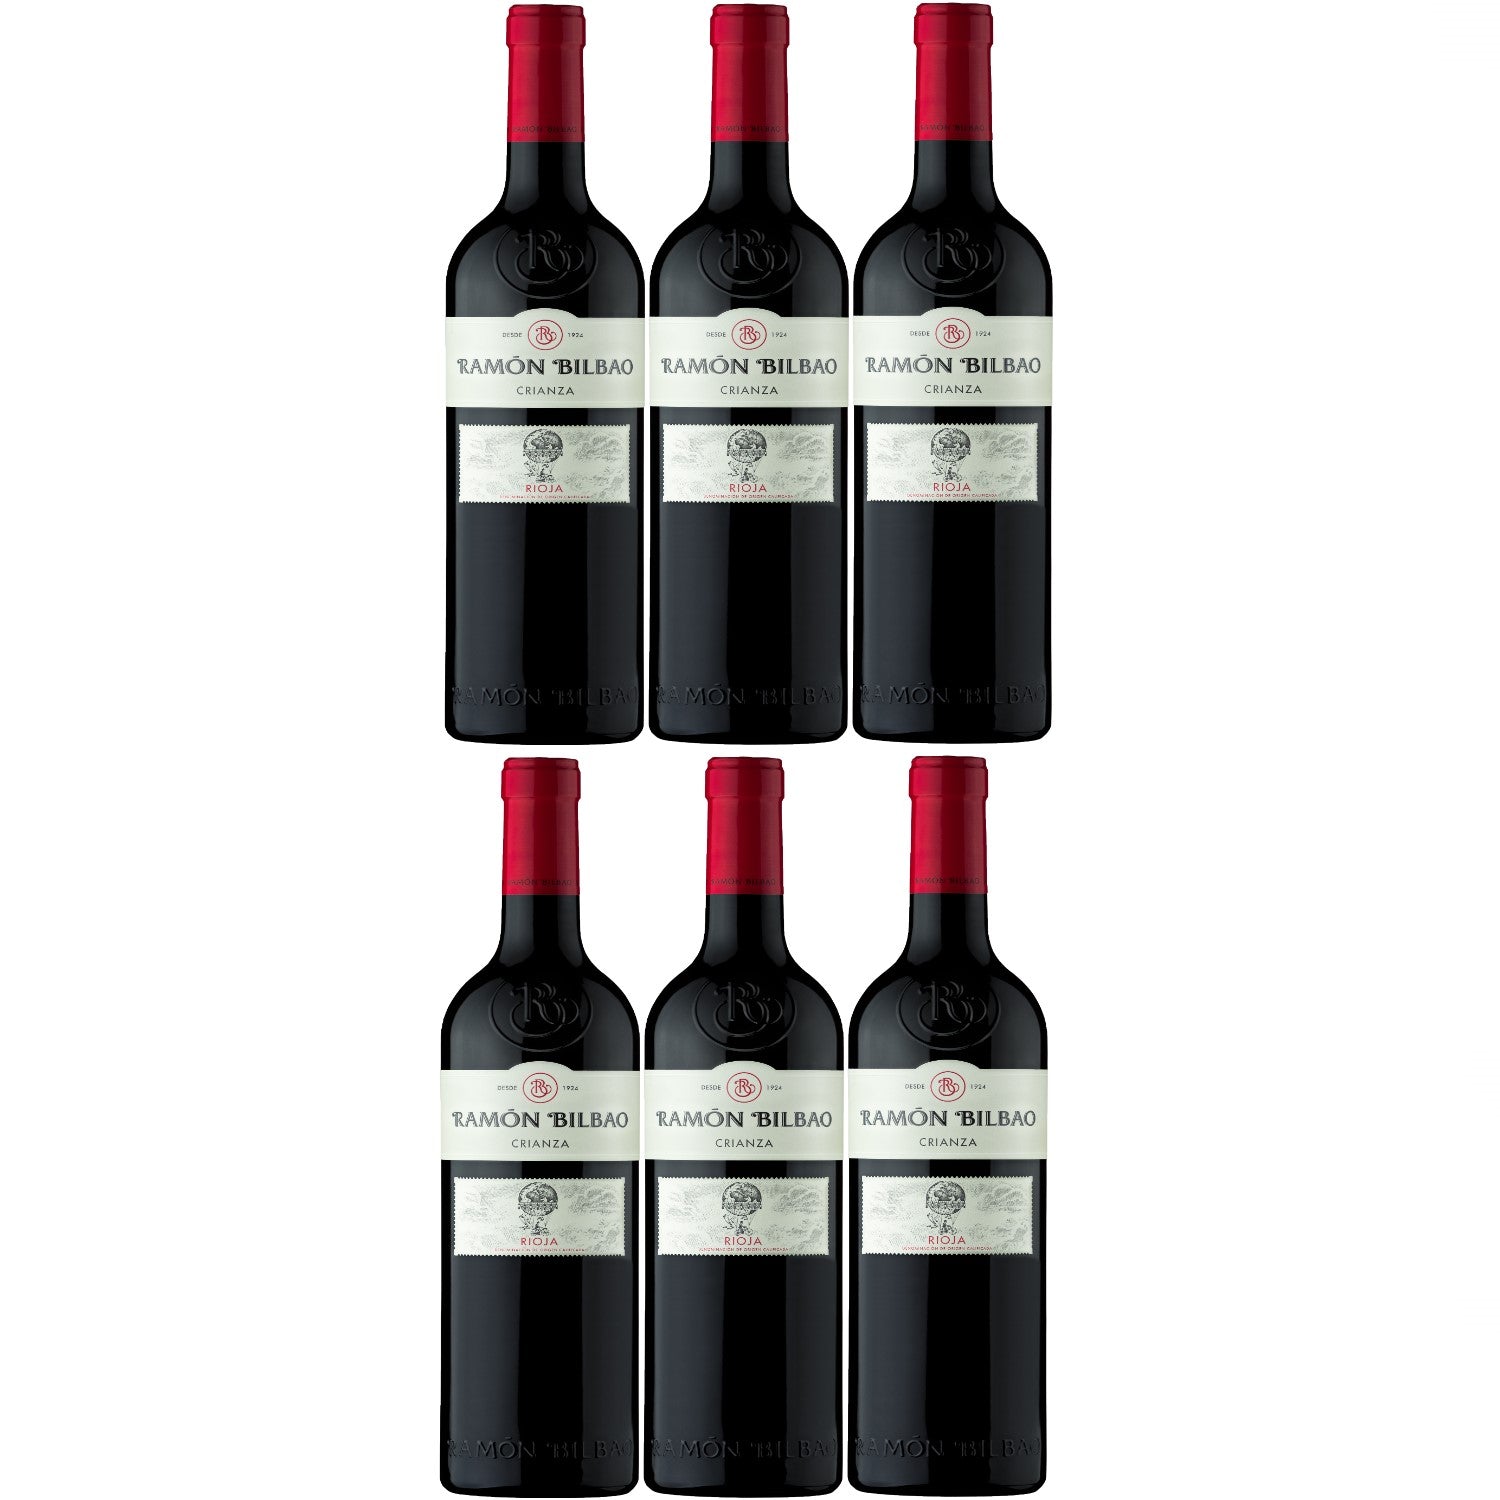 2018 Ramón Bilbao Crianza Rioja Doca Rotwein Wein trocken Spanien (6 x 0.75l) - Versanel -